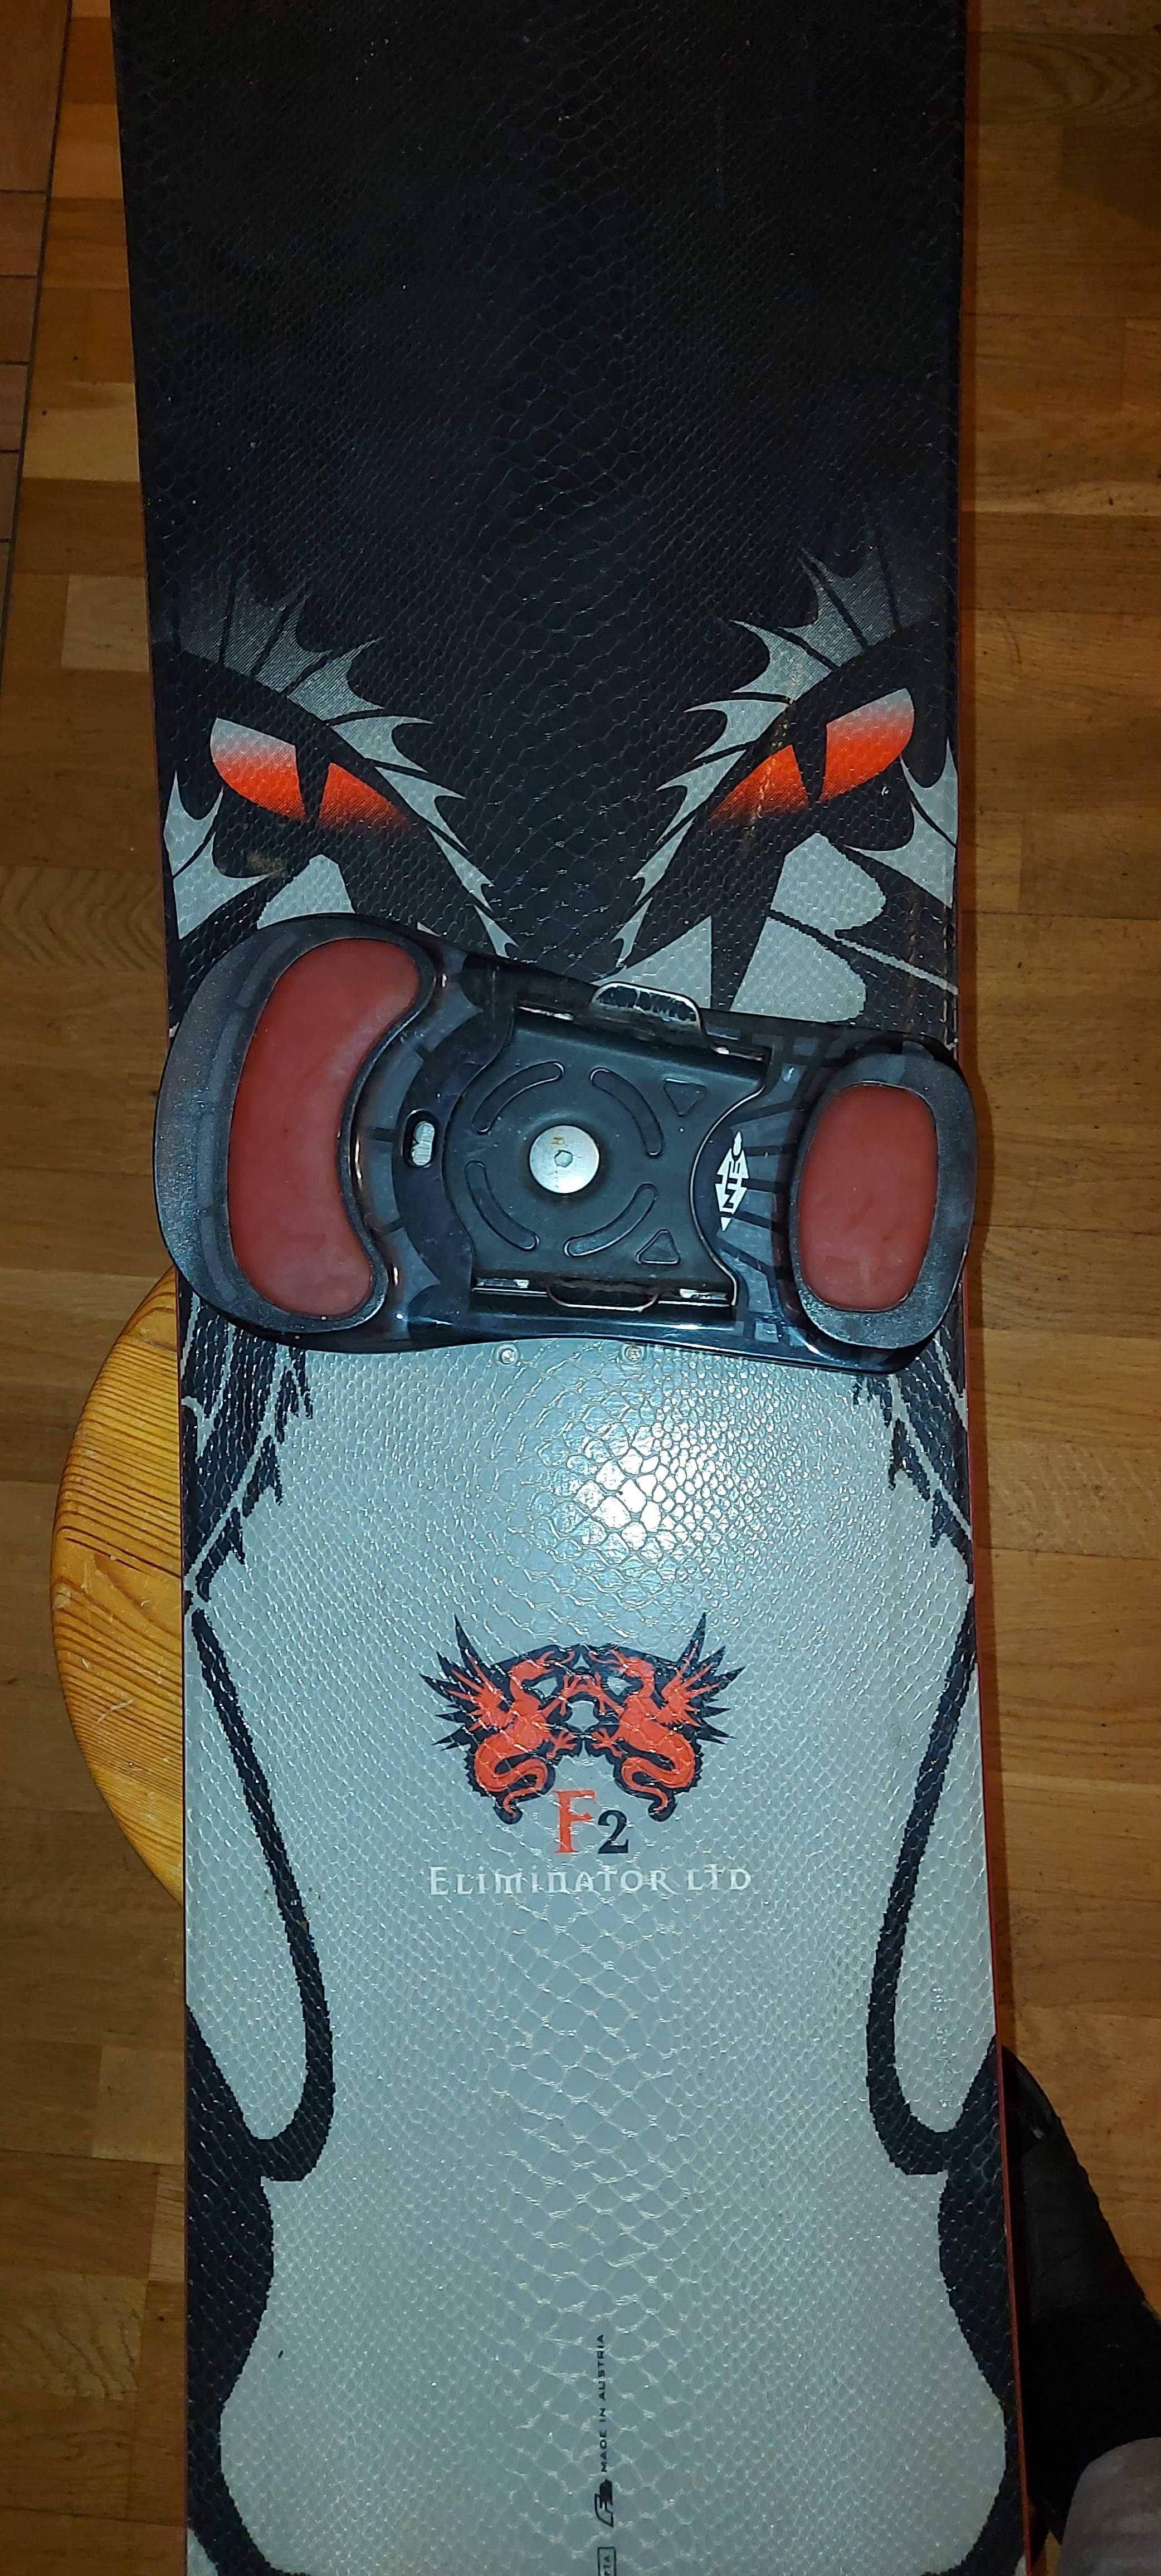 Deska snowboardowa F2 Eliminator LTD + wiązania + buty